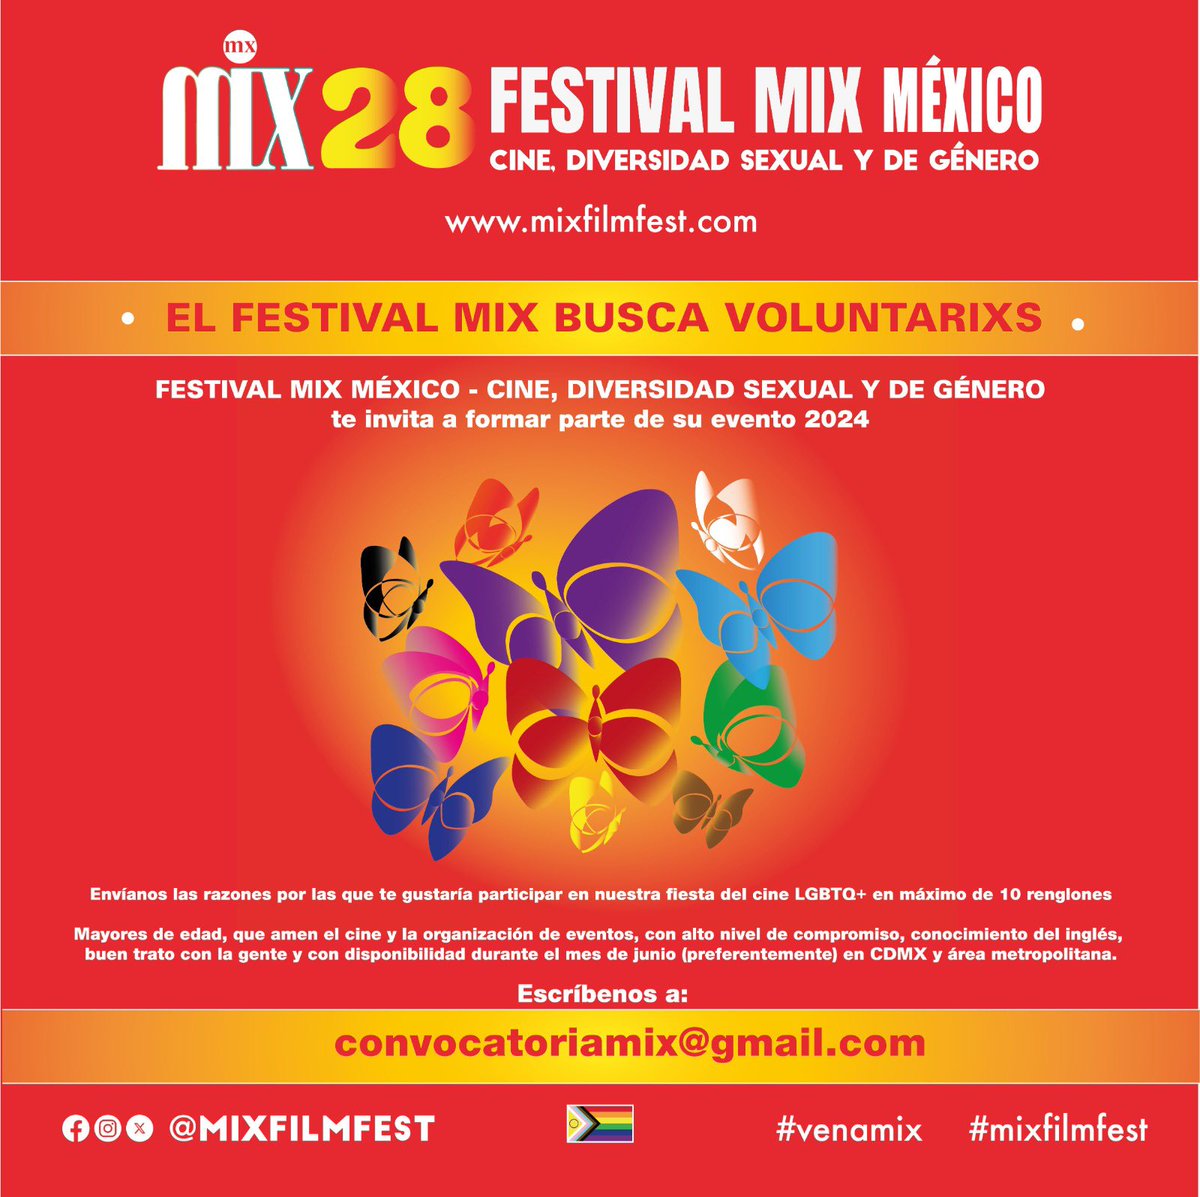 Festival Mix Mexico busca Voluntarixs! Escríbenos a convocatoriamix@gmail.com! Envíanos las razones por las q te gustaría participar en nuestra fiesta del cine LGBTQ+ en máximo 10 renglones